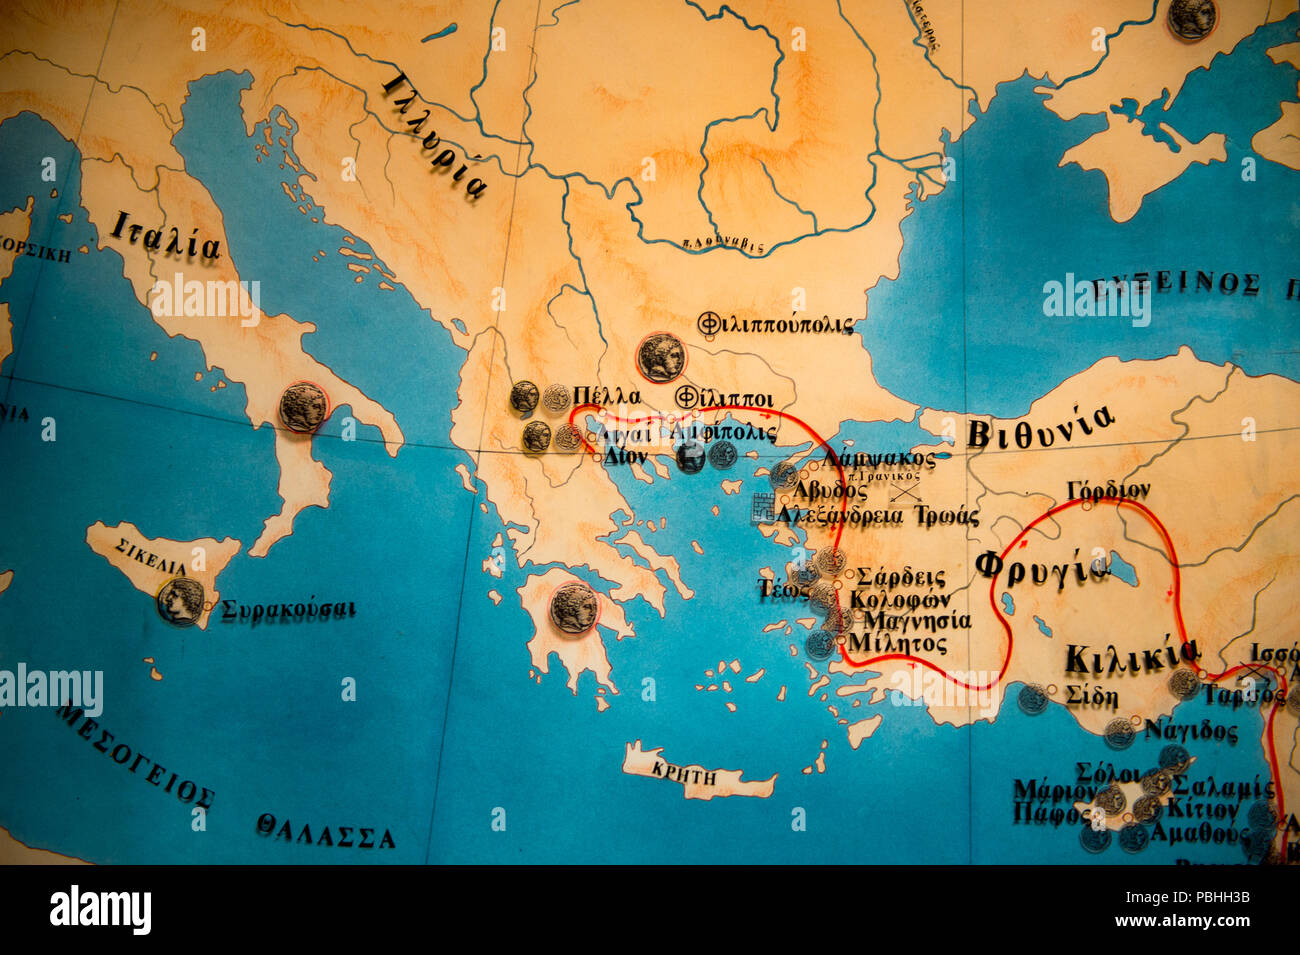 DION, Grecia - Mar 22, 2015: mapa geográfico en griego en el Museo  Arqueológico de Dion, Piería, Macedonia Central, Macedonia, Grecia. Este  museo fue establecido Fotografía de stock - Alamy